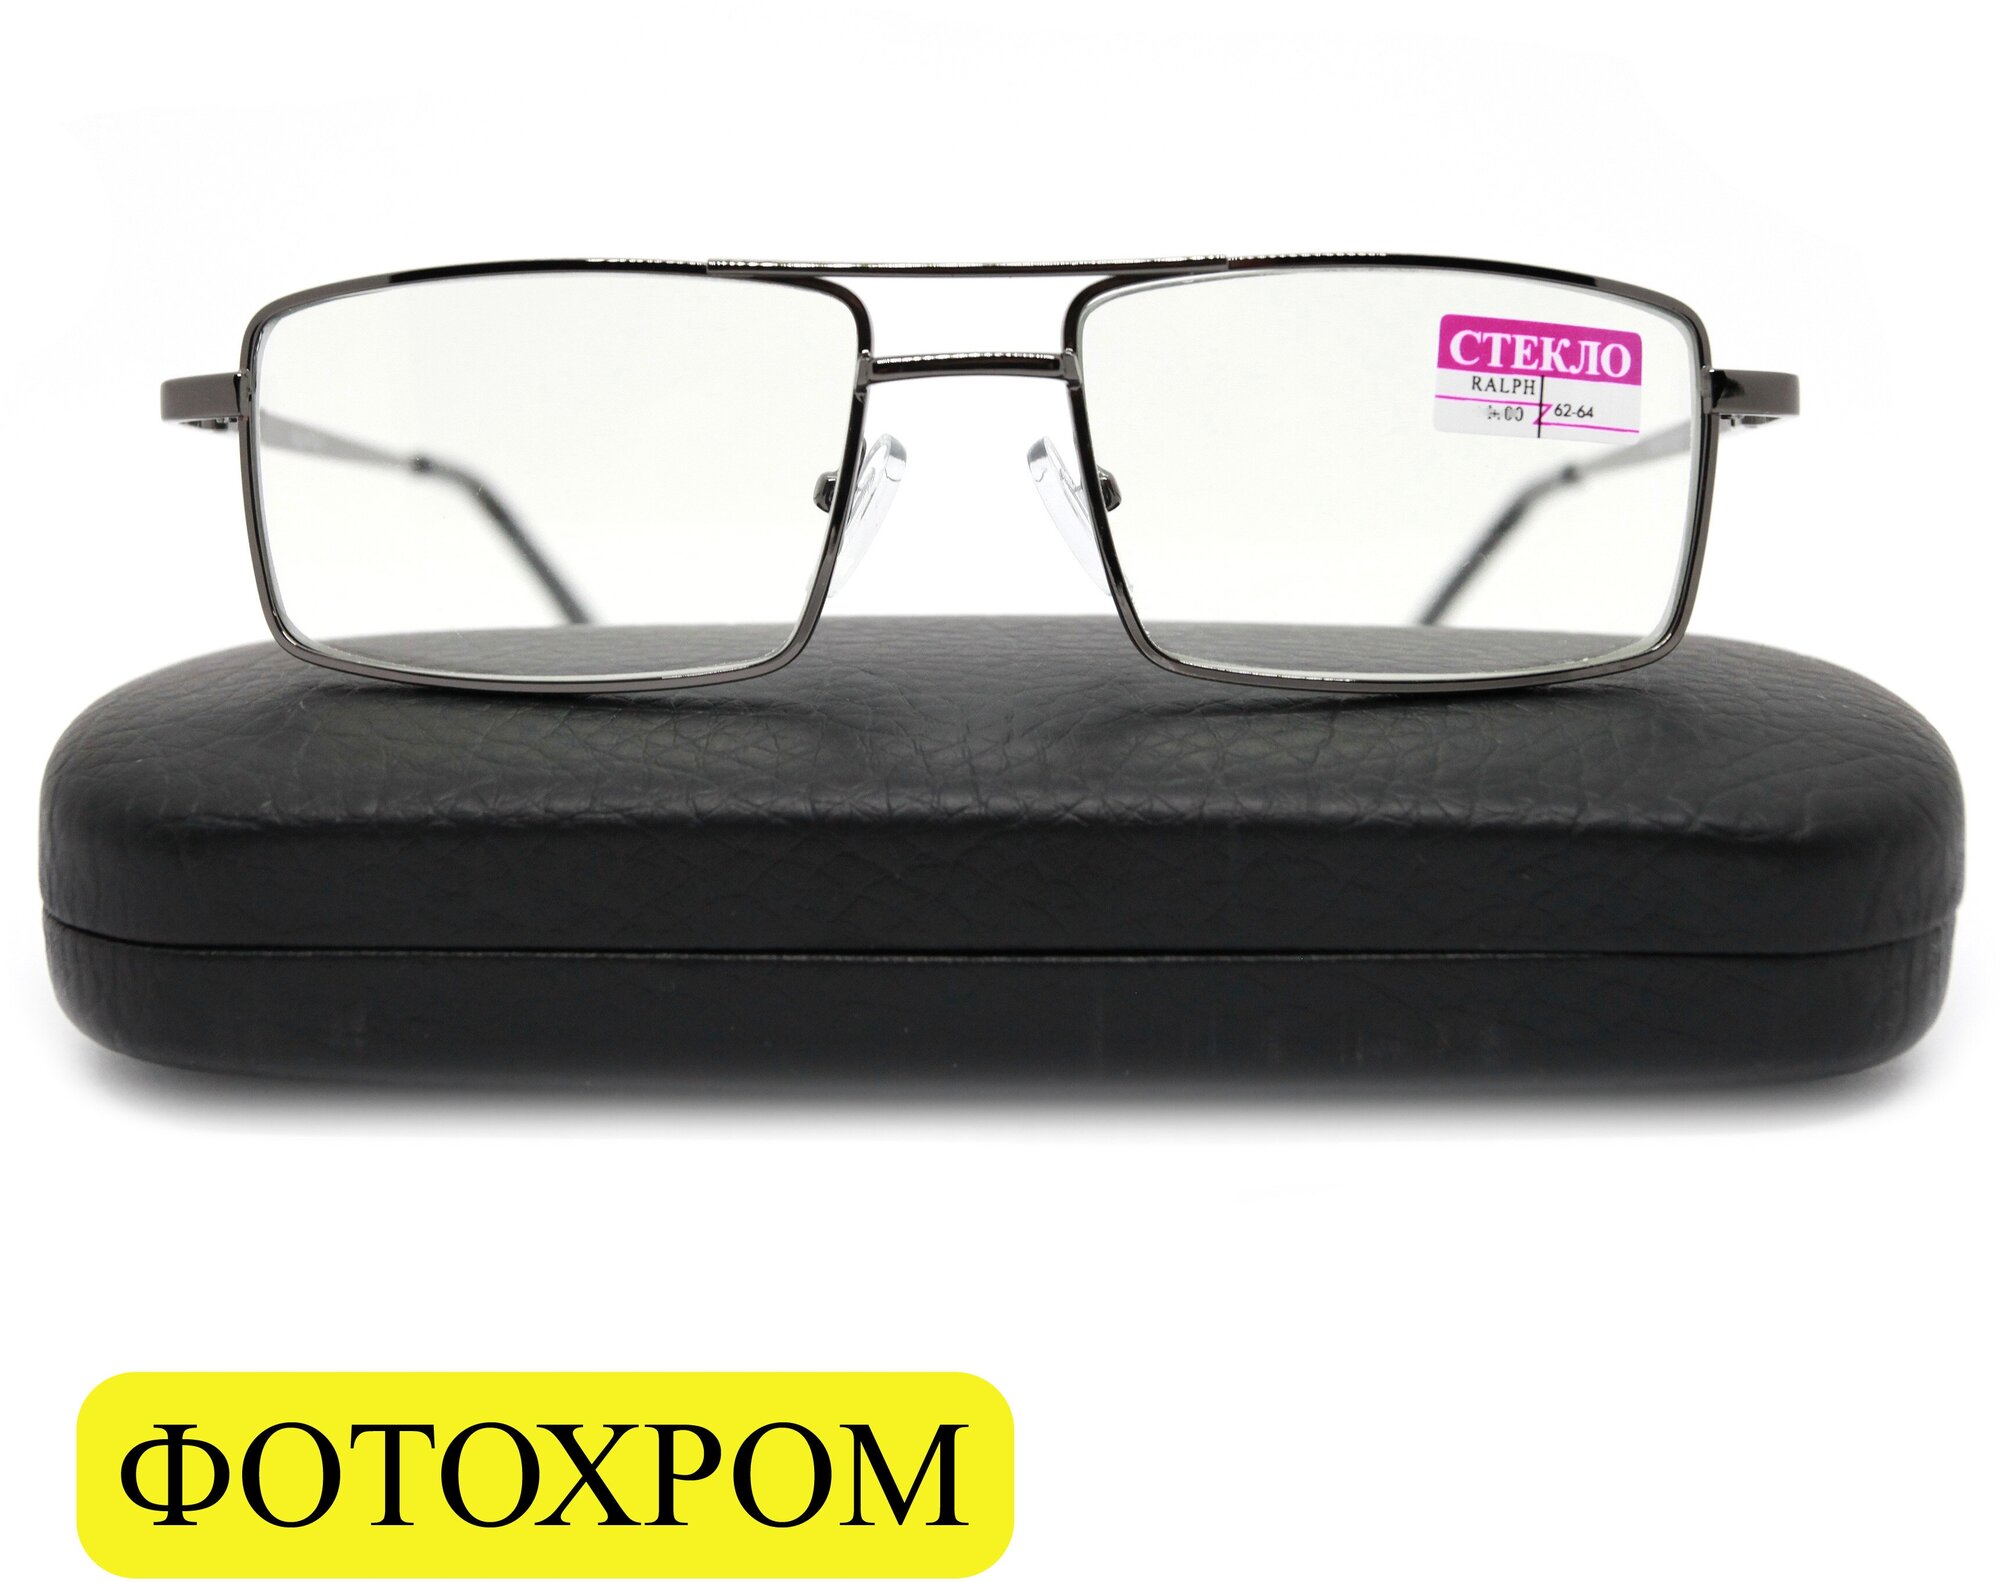 Готовые очки солнцезащитные фотохром (+1.50) RALPH 016, линза стекло, с футляром, цвет серый, РЦ 62-64